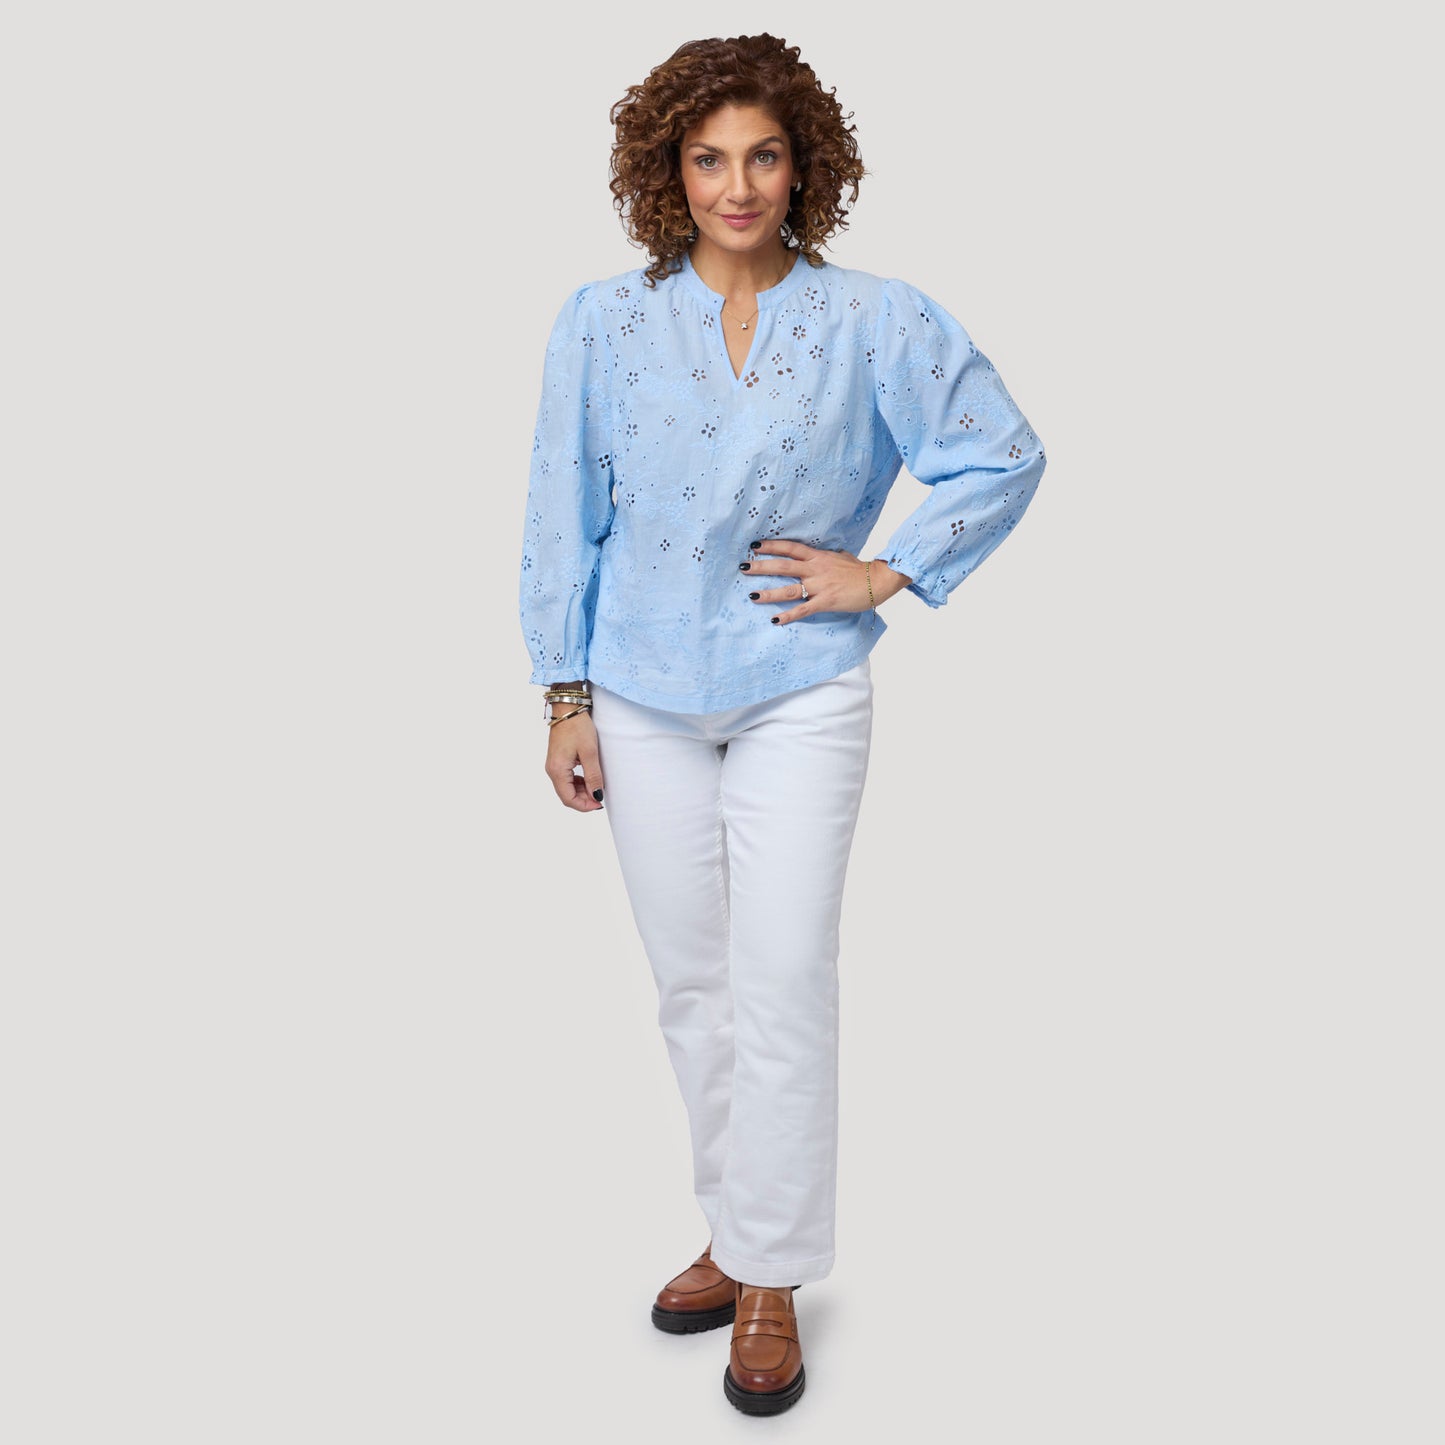 Ljus & fräsch i vita jeans med ljusblå blus